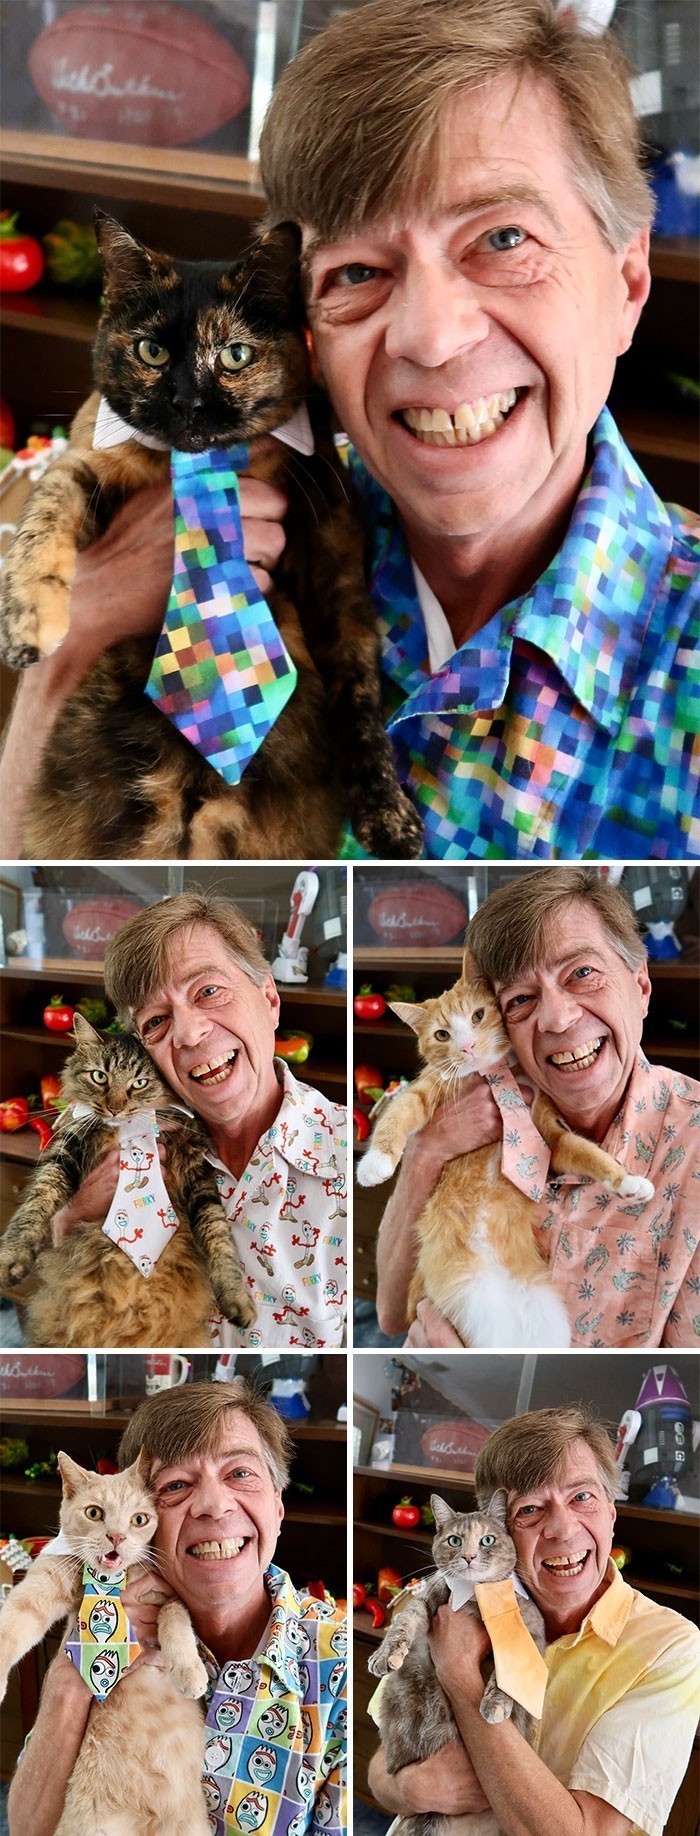 2. "Szyję koszule i pasujące krawaty dla moich pięciu kotów. To mnóstwo frajdy."